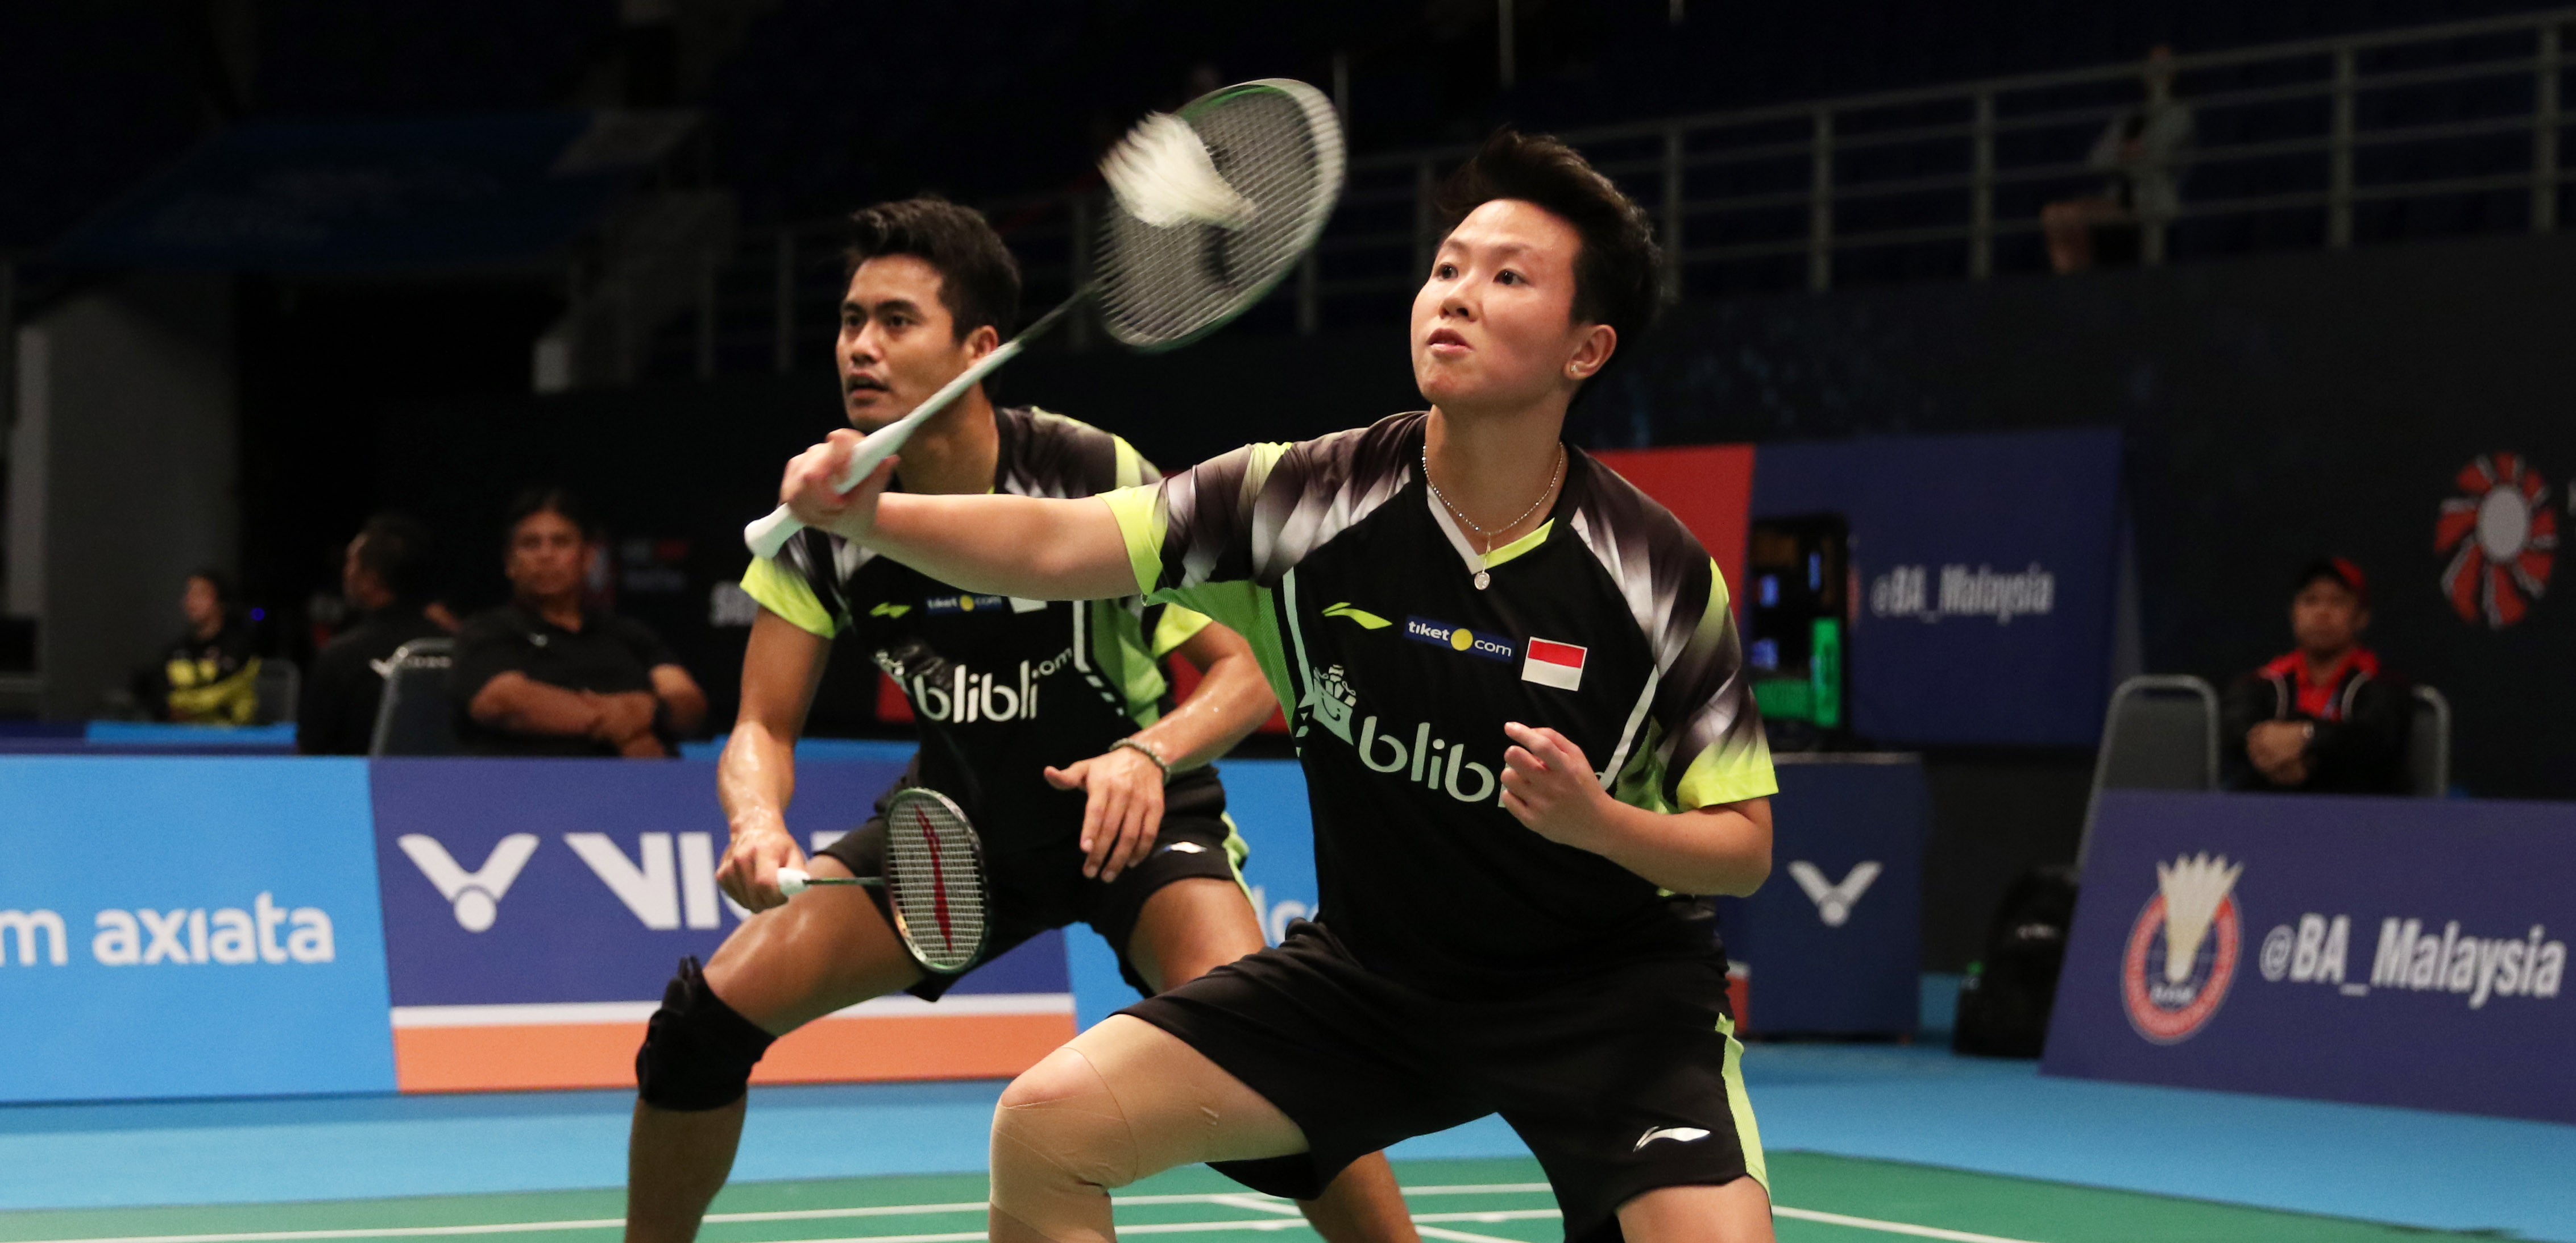 Tontowi dan Liliyana Saat Berlaga di Indonesia Open 2018